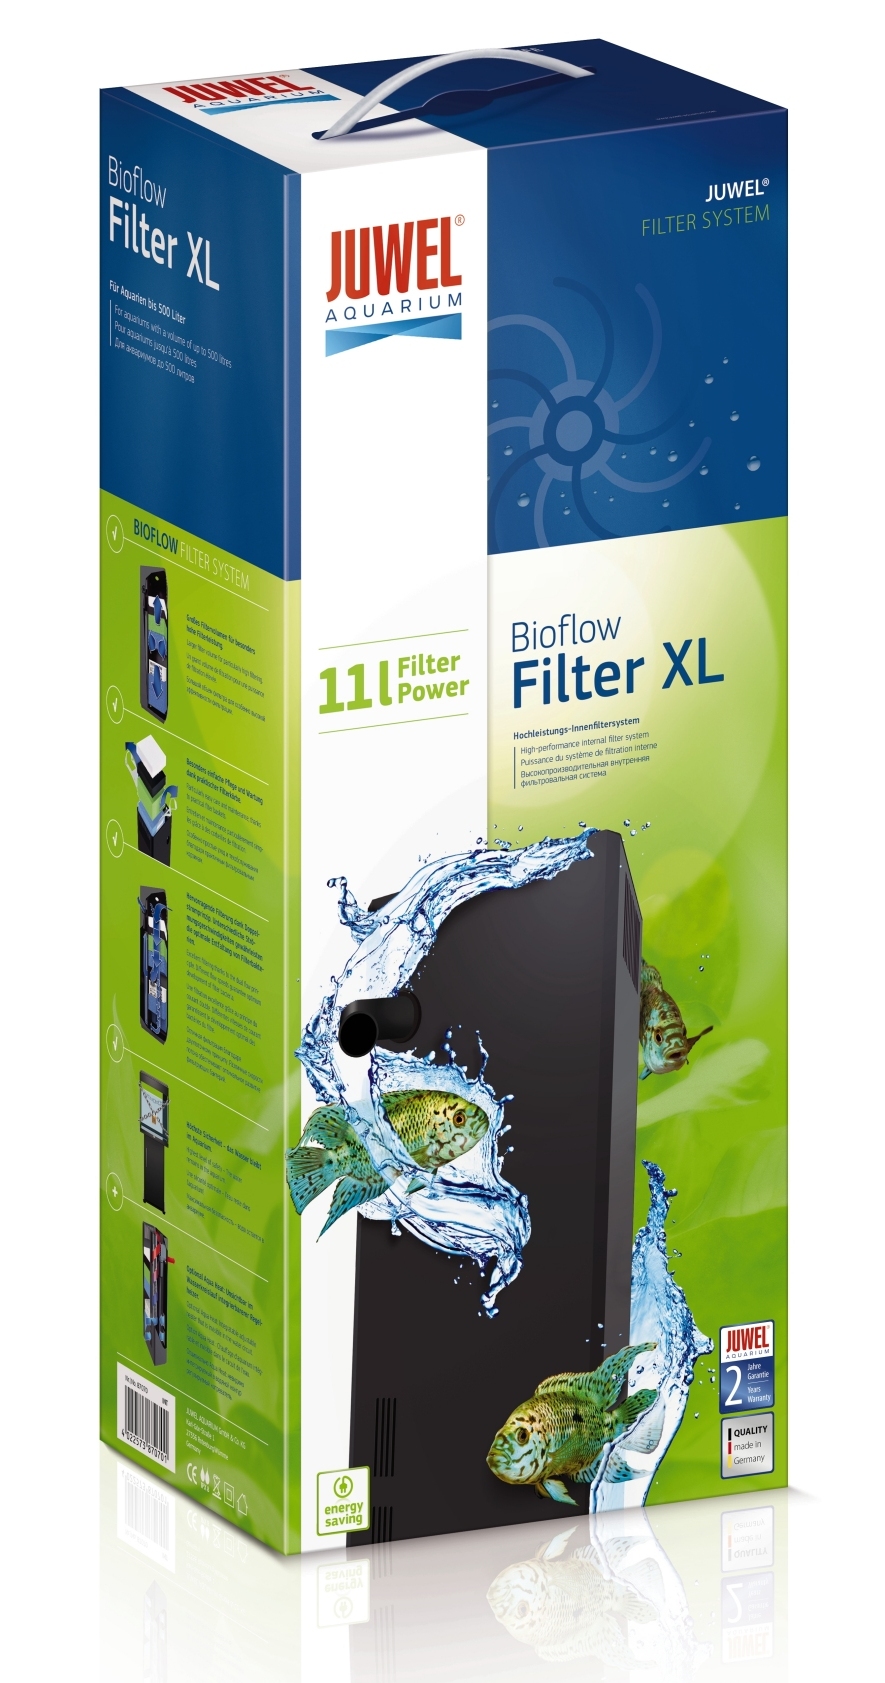 Bioflow Filter XL